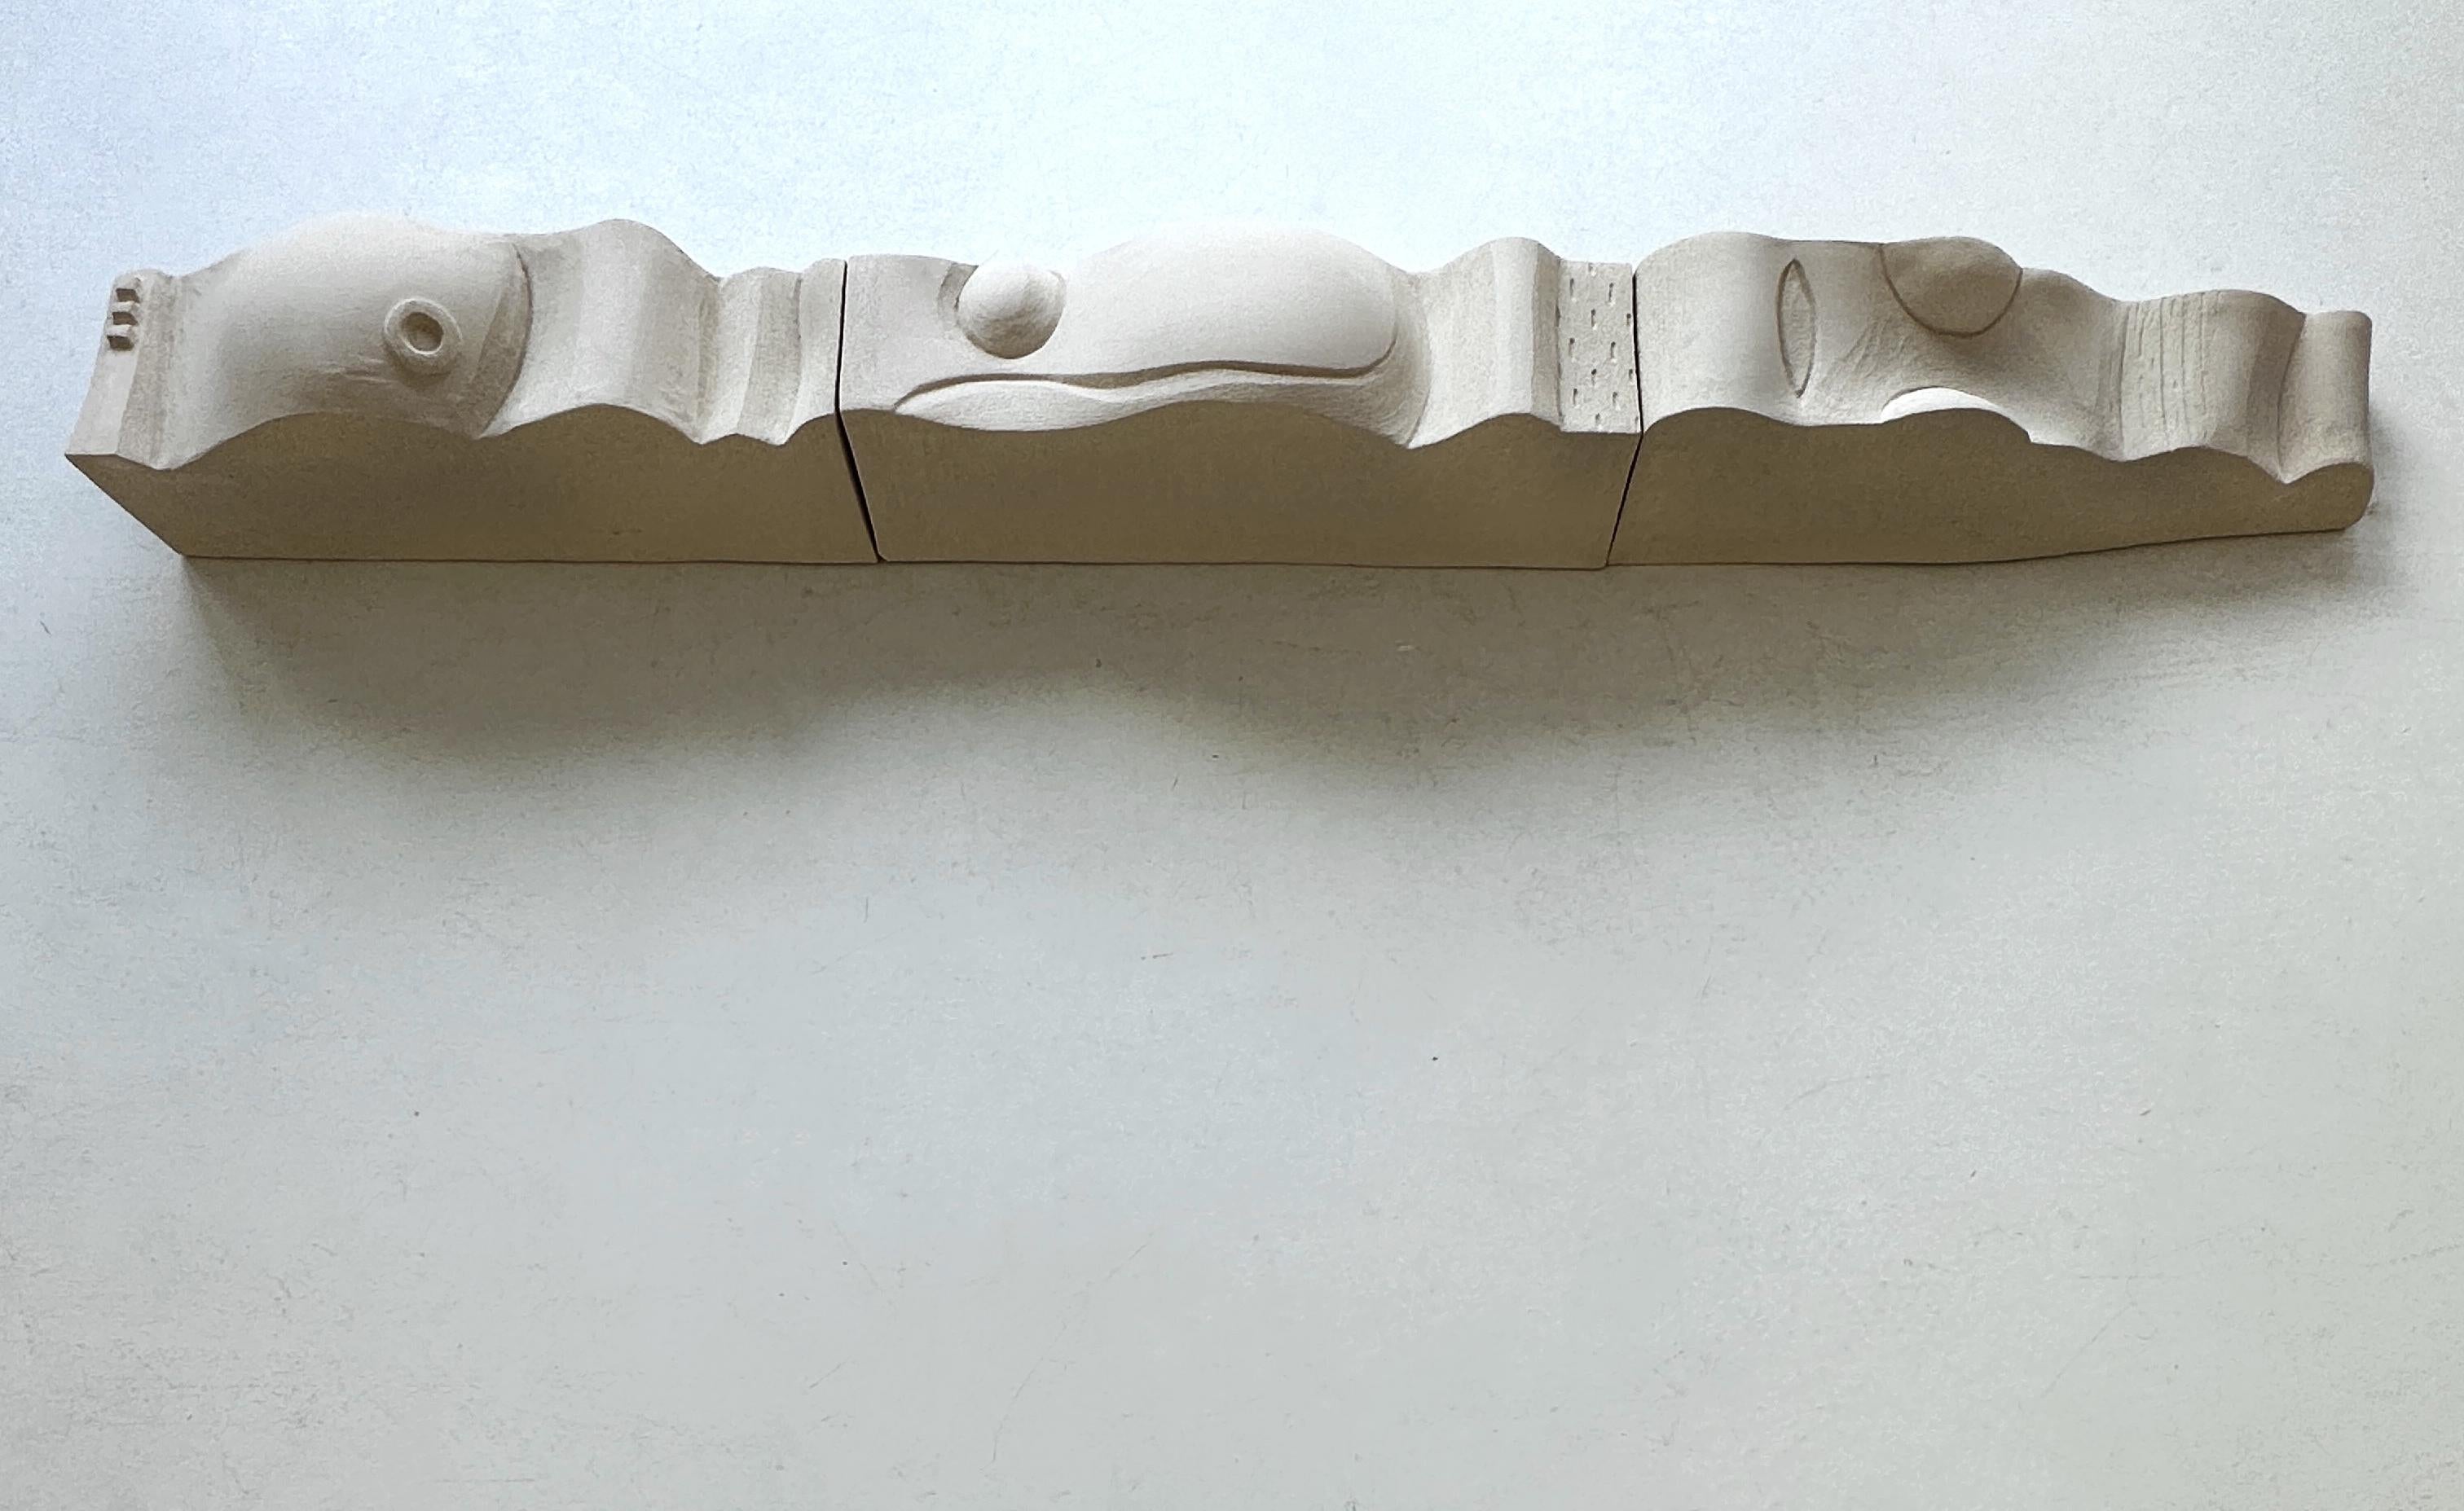 Regal von Olivia Cognet
Abmessungen: B 210 x T 15 x H 20 cm
MATERIALIEN: Keramisch.
Modul mit 3 Teilen.

Jede von Olivias handgefertigten Kreationen ist ein einzigartiges Kunstwerk, der Schnappschuss eines kostbaren Moments in einer Welt des